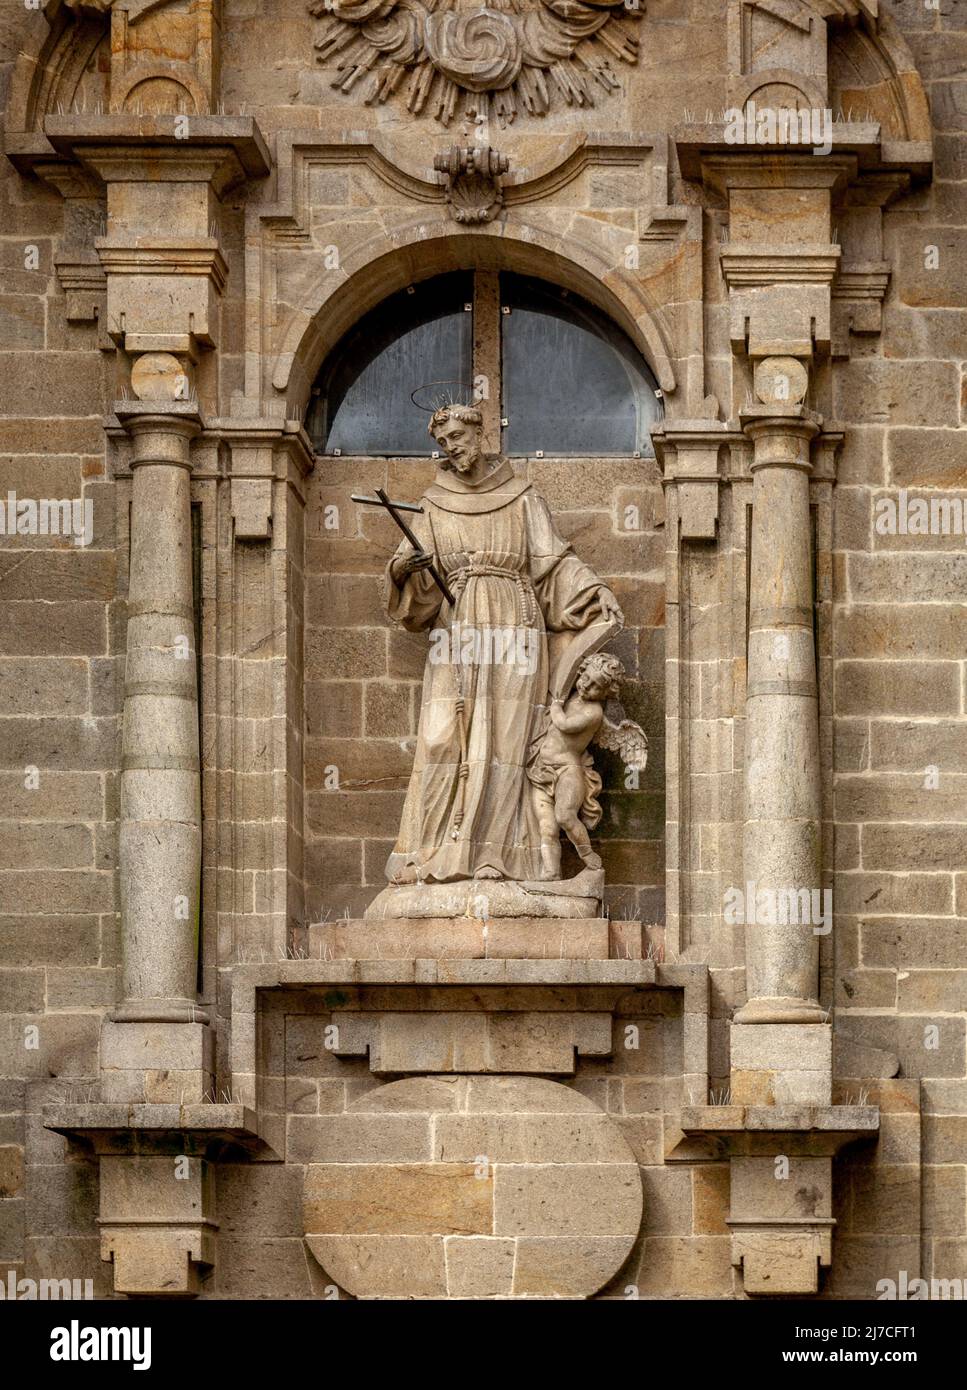 Religious statue on a house in Santiago de Compostela Stock Photo